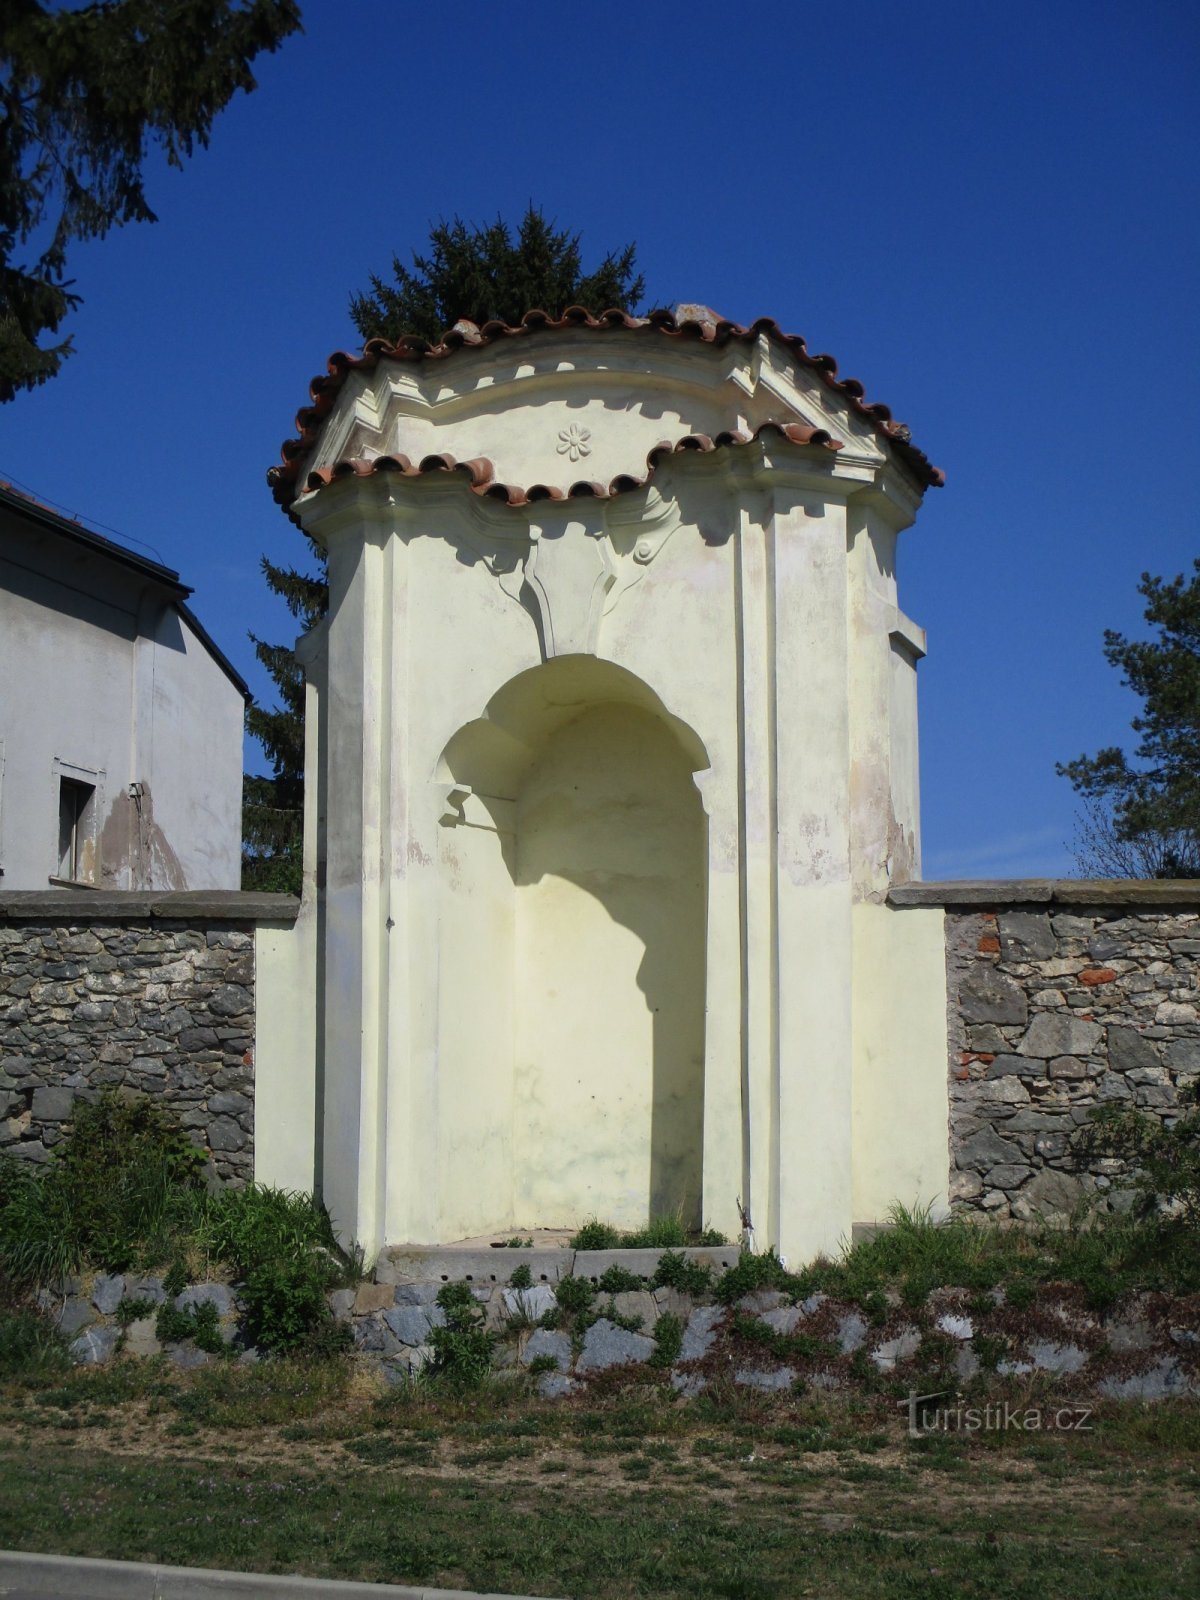 Niche chapel in the parish wall (Osice, 18.4.2020/XNUMX/XNUMX)